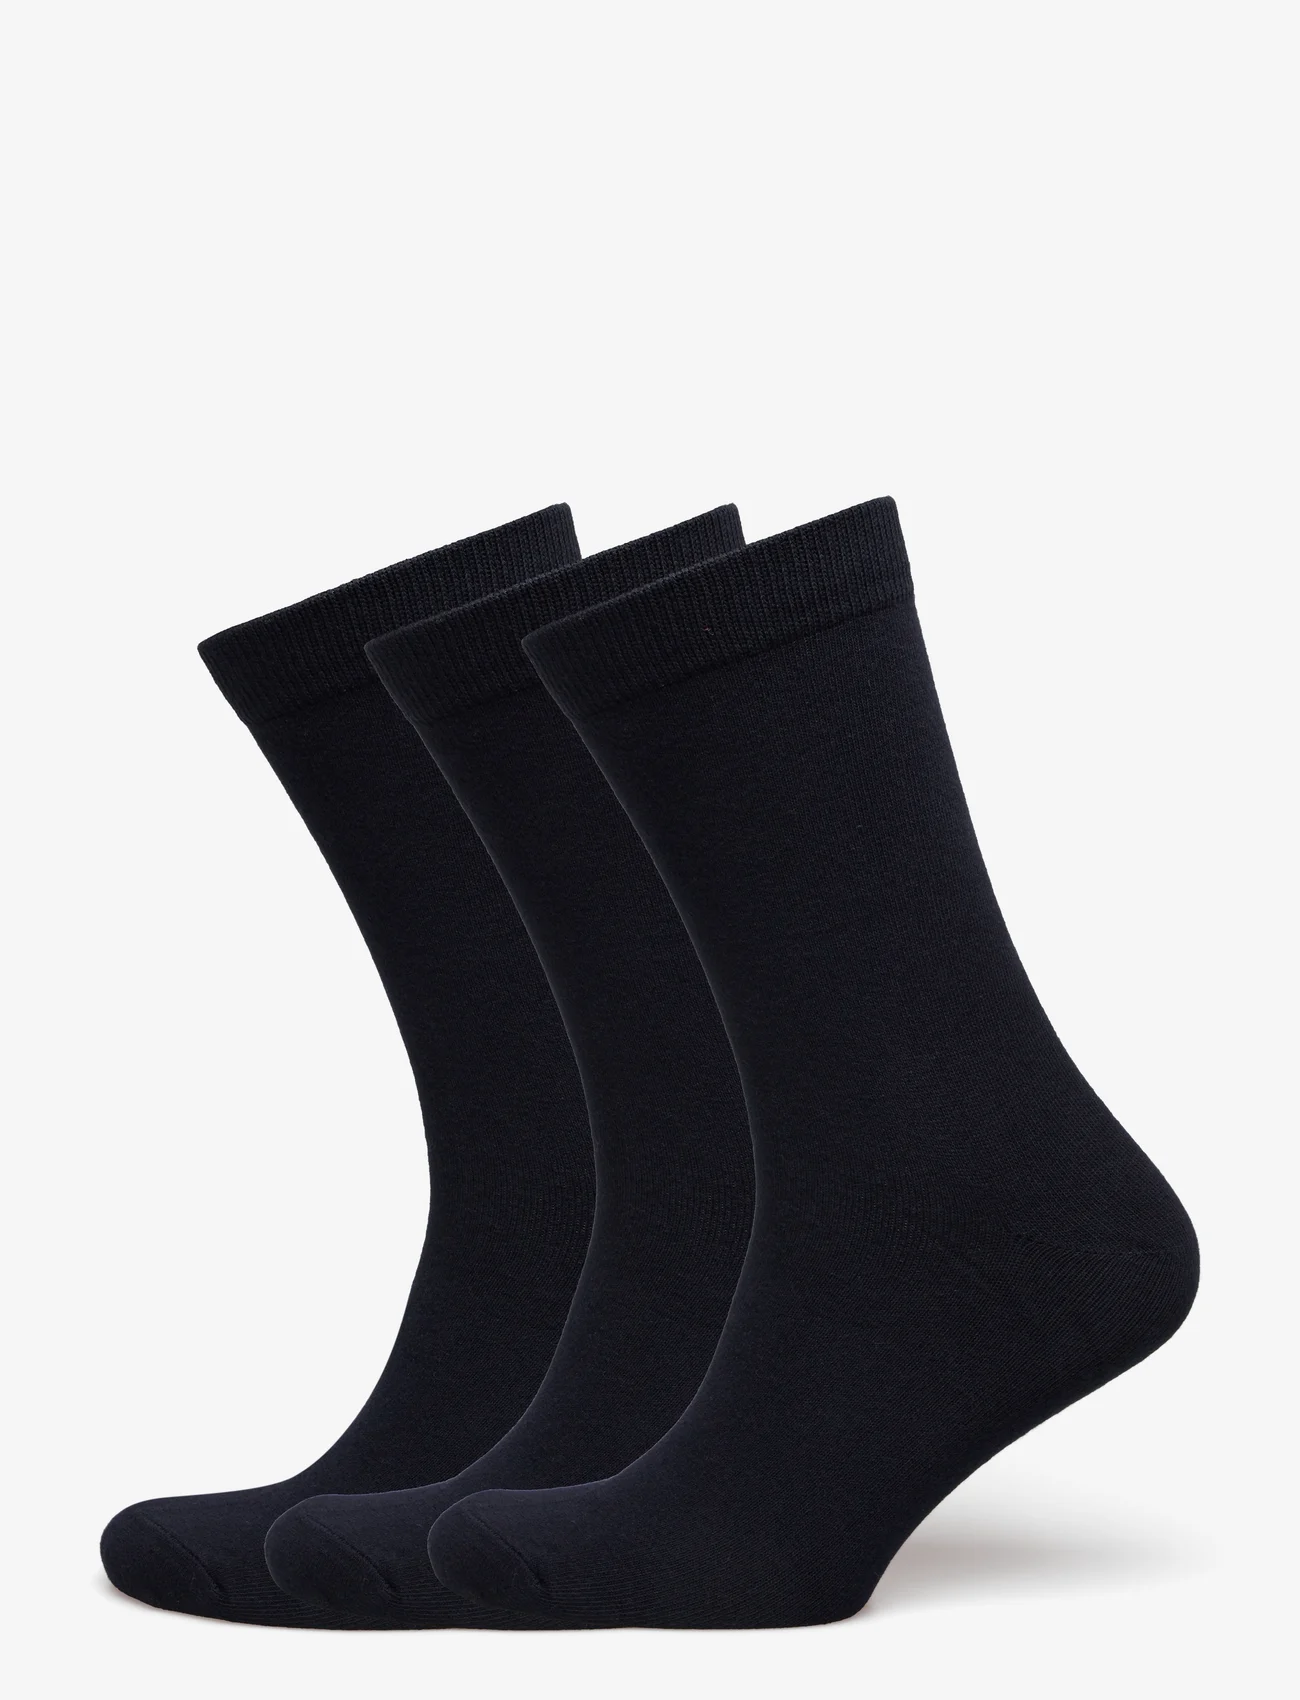 Matinique - Socks 3-pack - laveste priser - dark navy - 0